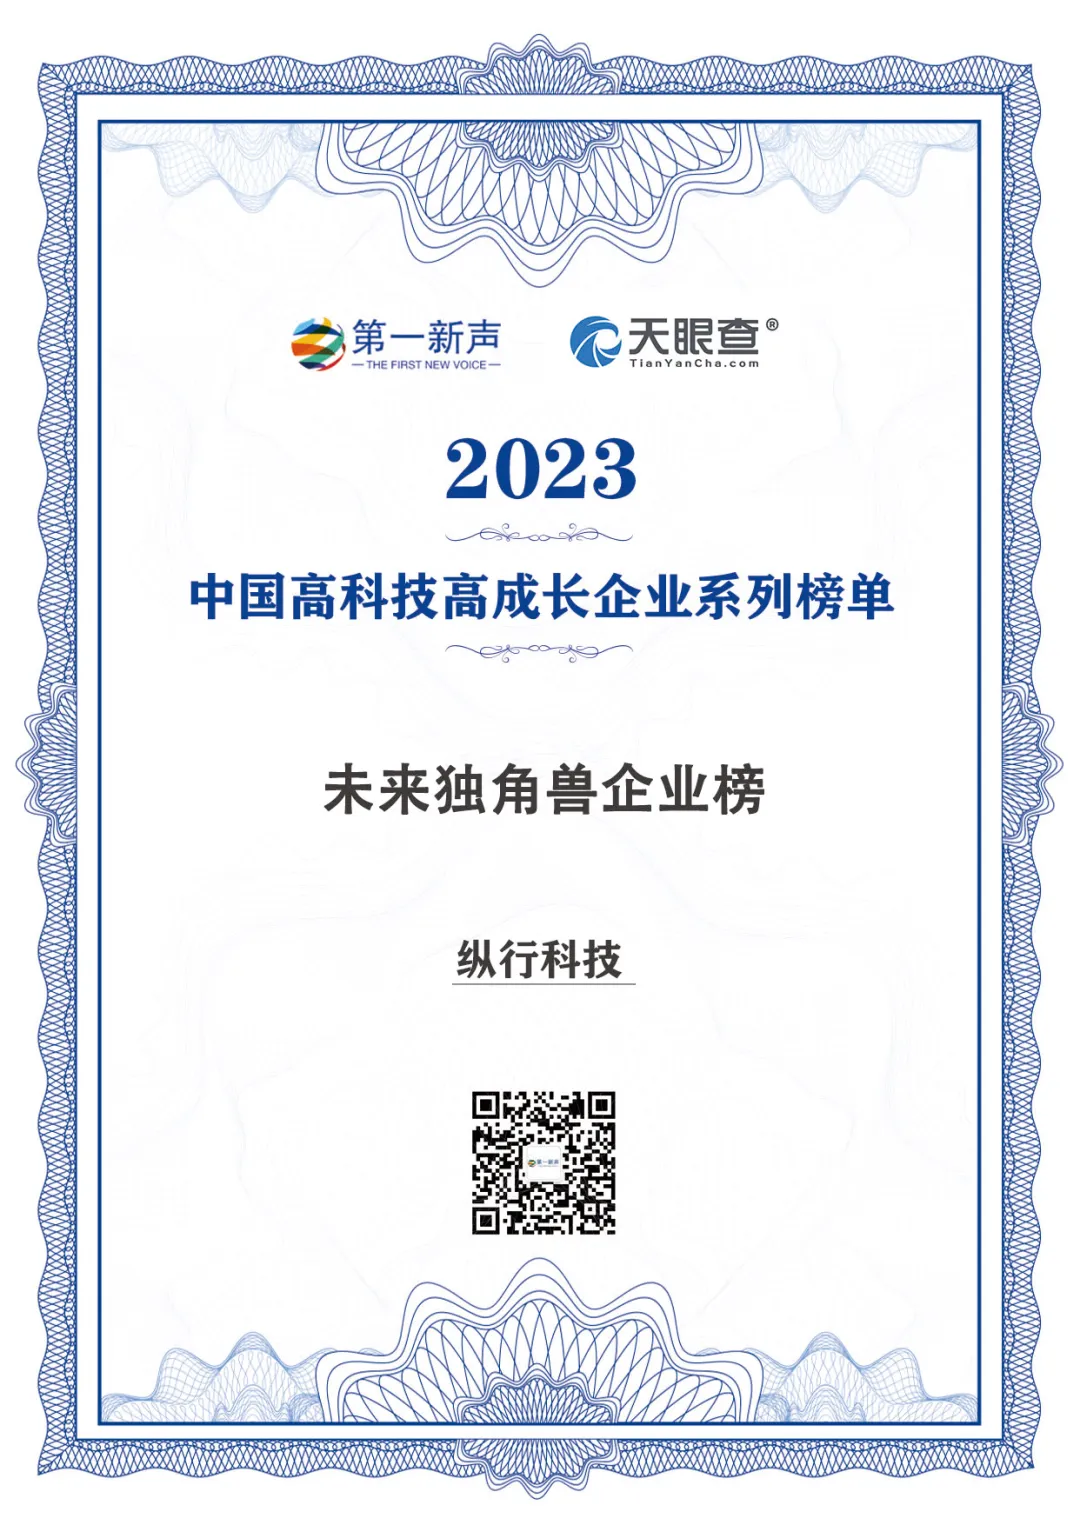 纵行科技荣登“2023年度中国高科技高成长未来独角兽榜”